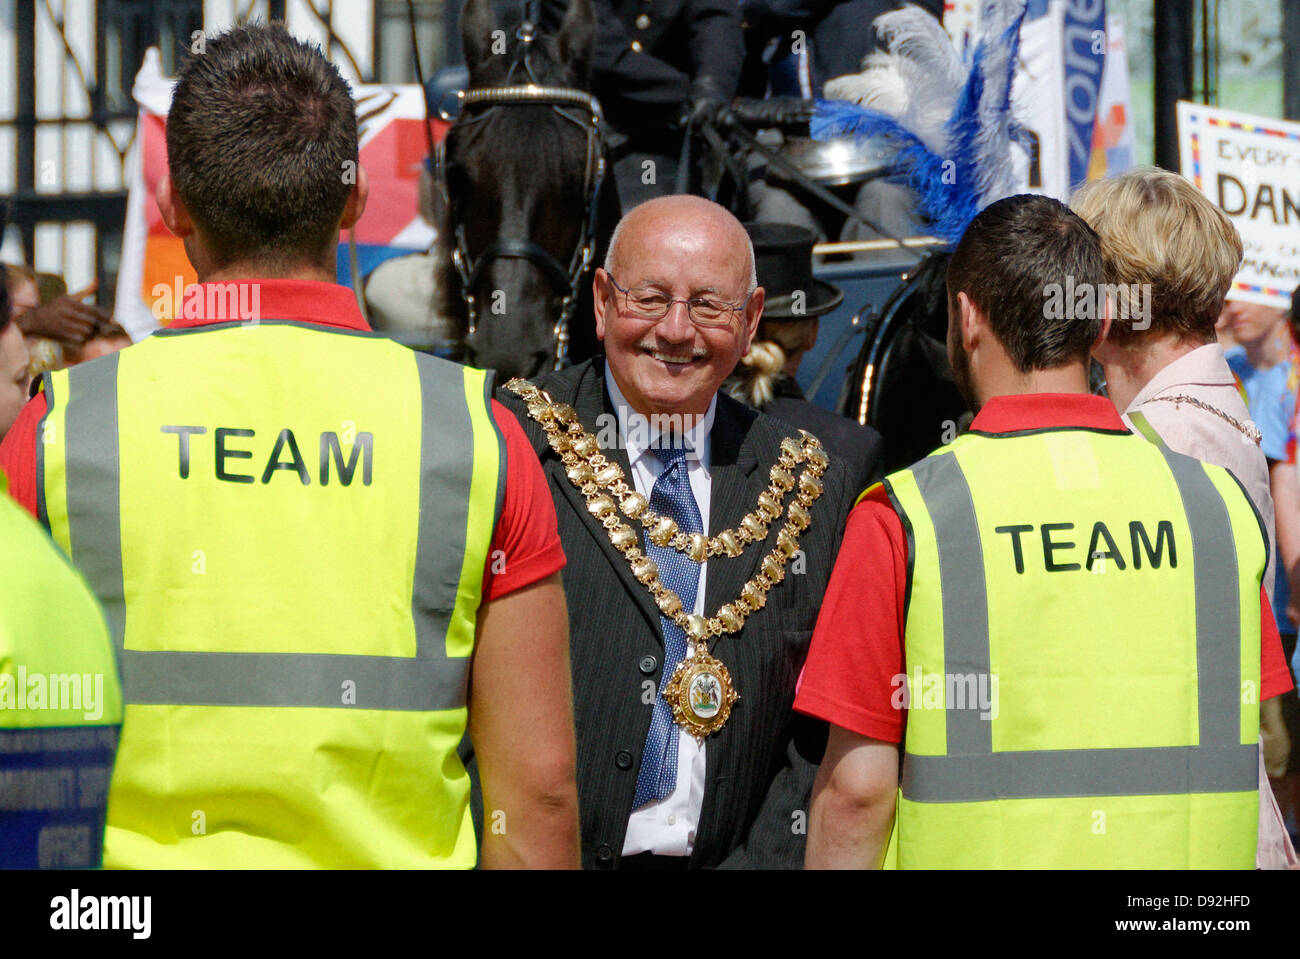 El alcalde de la ciudad de Wigan, Billy Rotherham, sonrientes de seguridad anteriores al lanzamiento del Wigan Zona Joven. Foto de stock